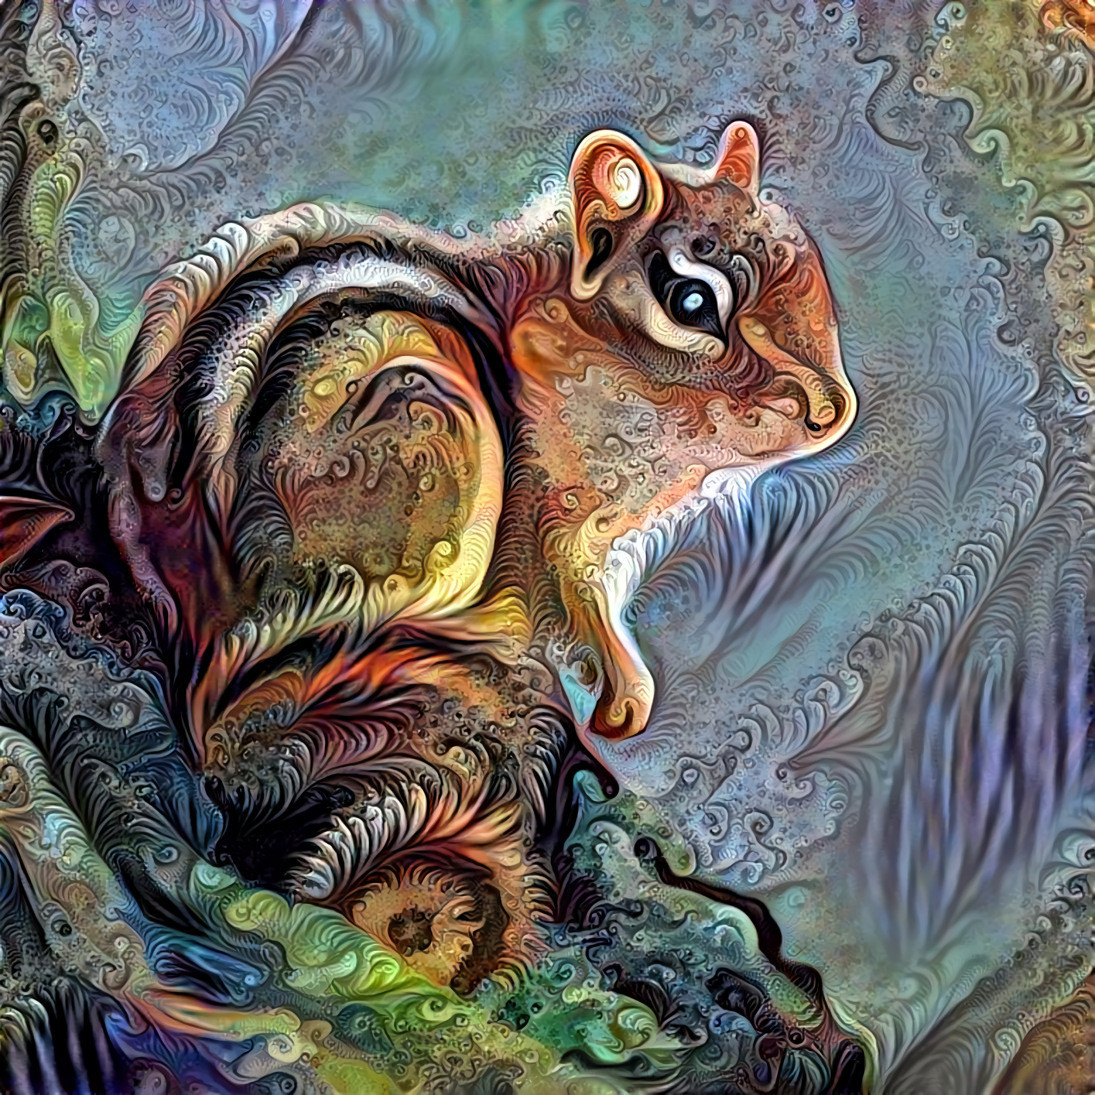 Squirrel picture 